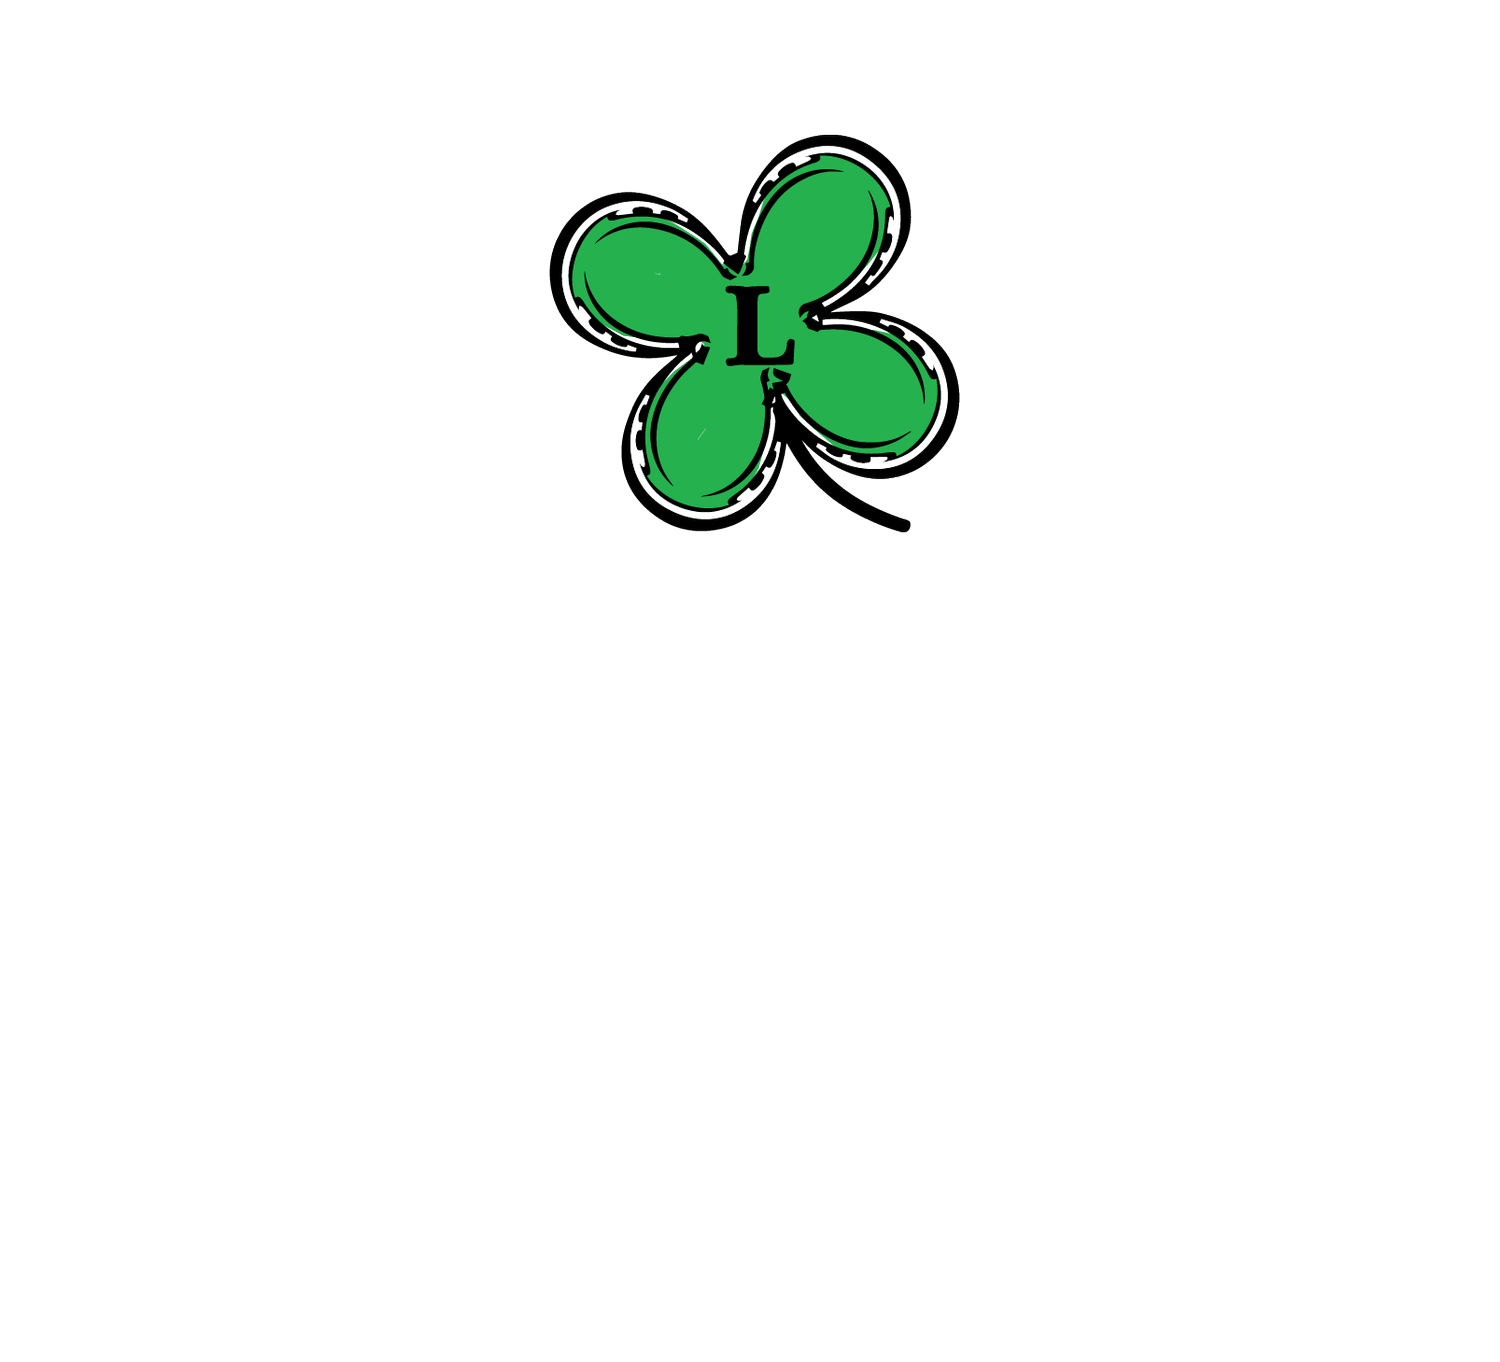 Logan Farms NC